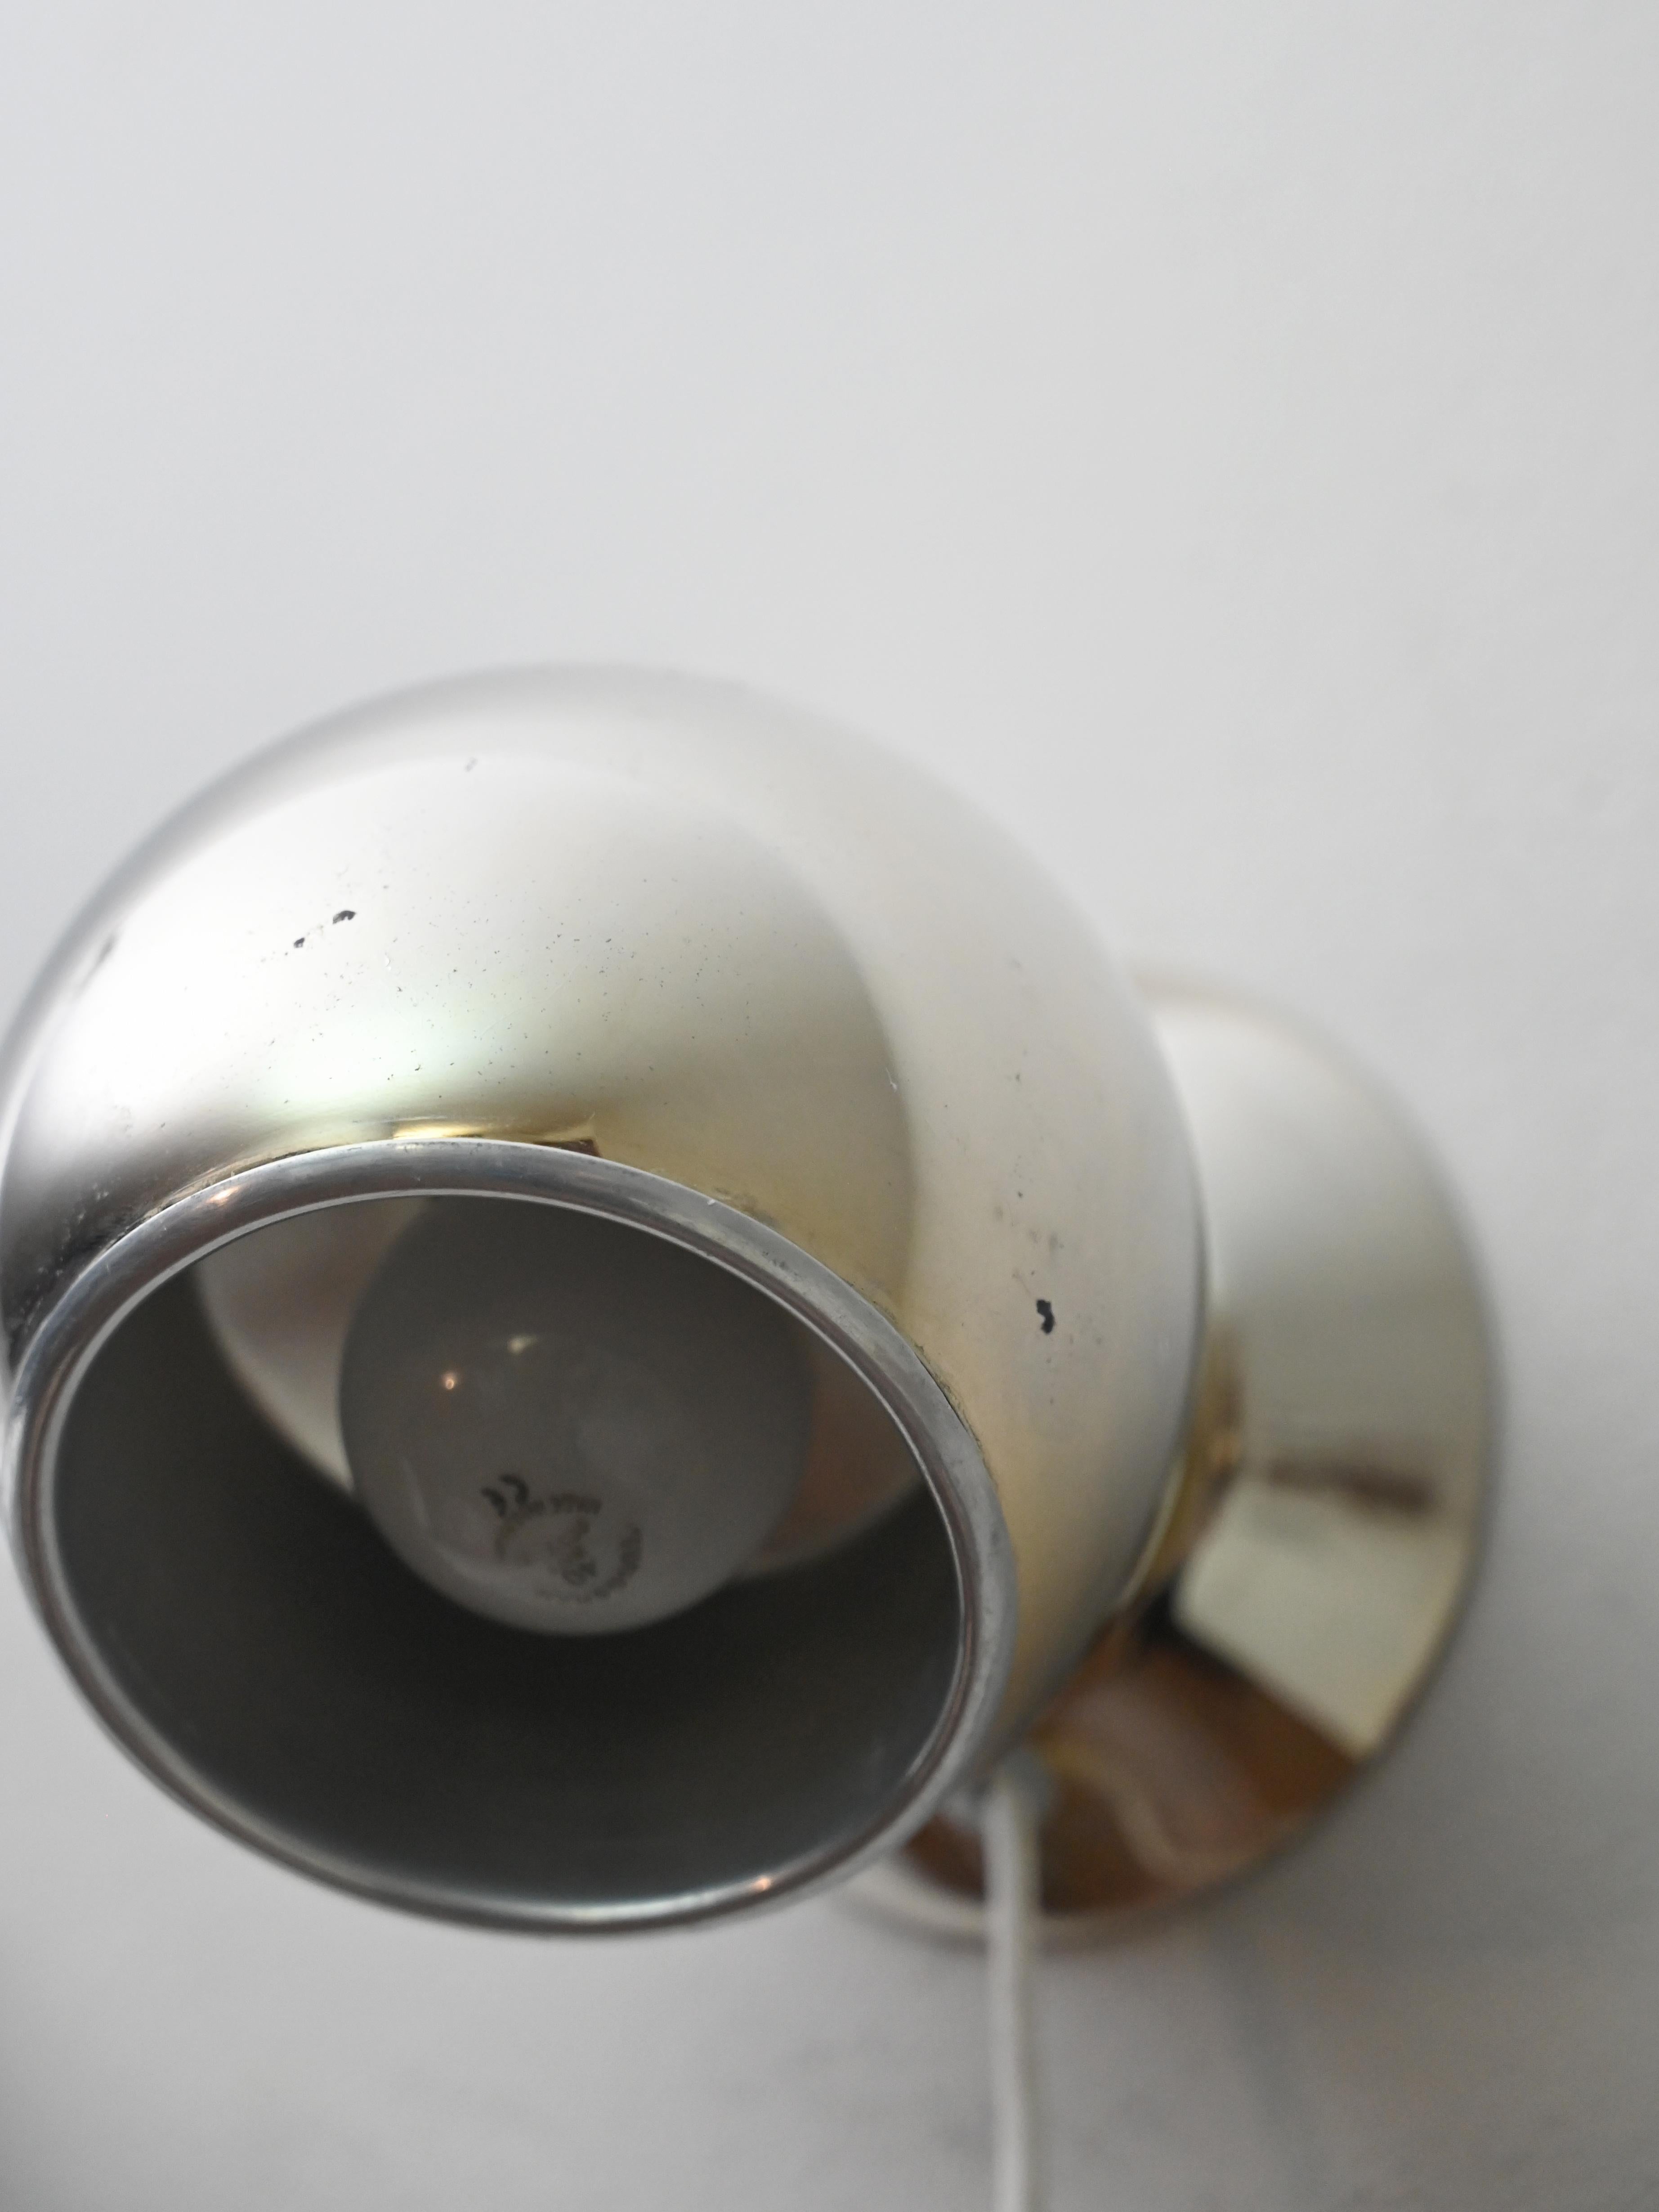 Original 1960er Wandlampe aus vergoldetem Metall.
Eine moderne und funktionelle Lampe, die dank des Magneten im Lampenschirm die Möglichkeit bietet
das Licht nach den eigenen Bedürfnissen ausrichten.
Elegant und minimalistisch passt er sich an